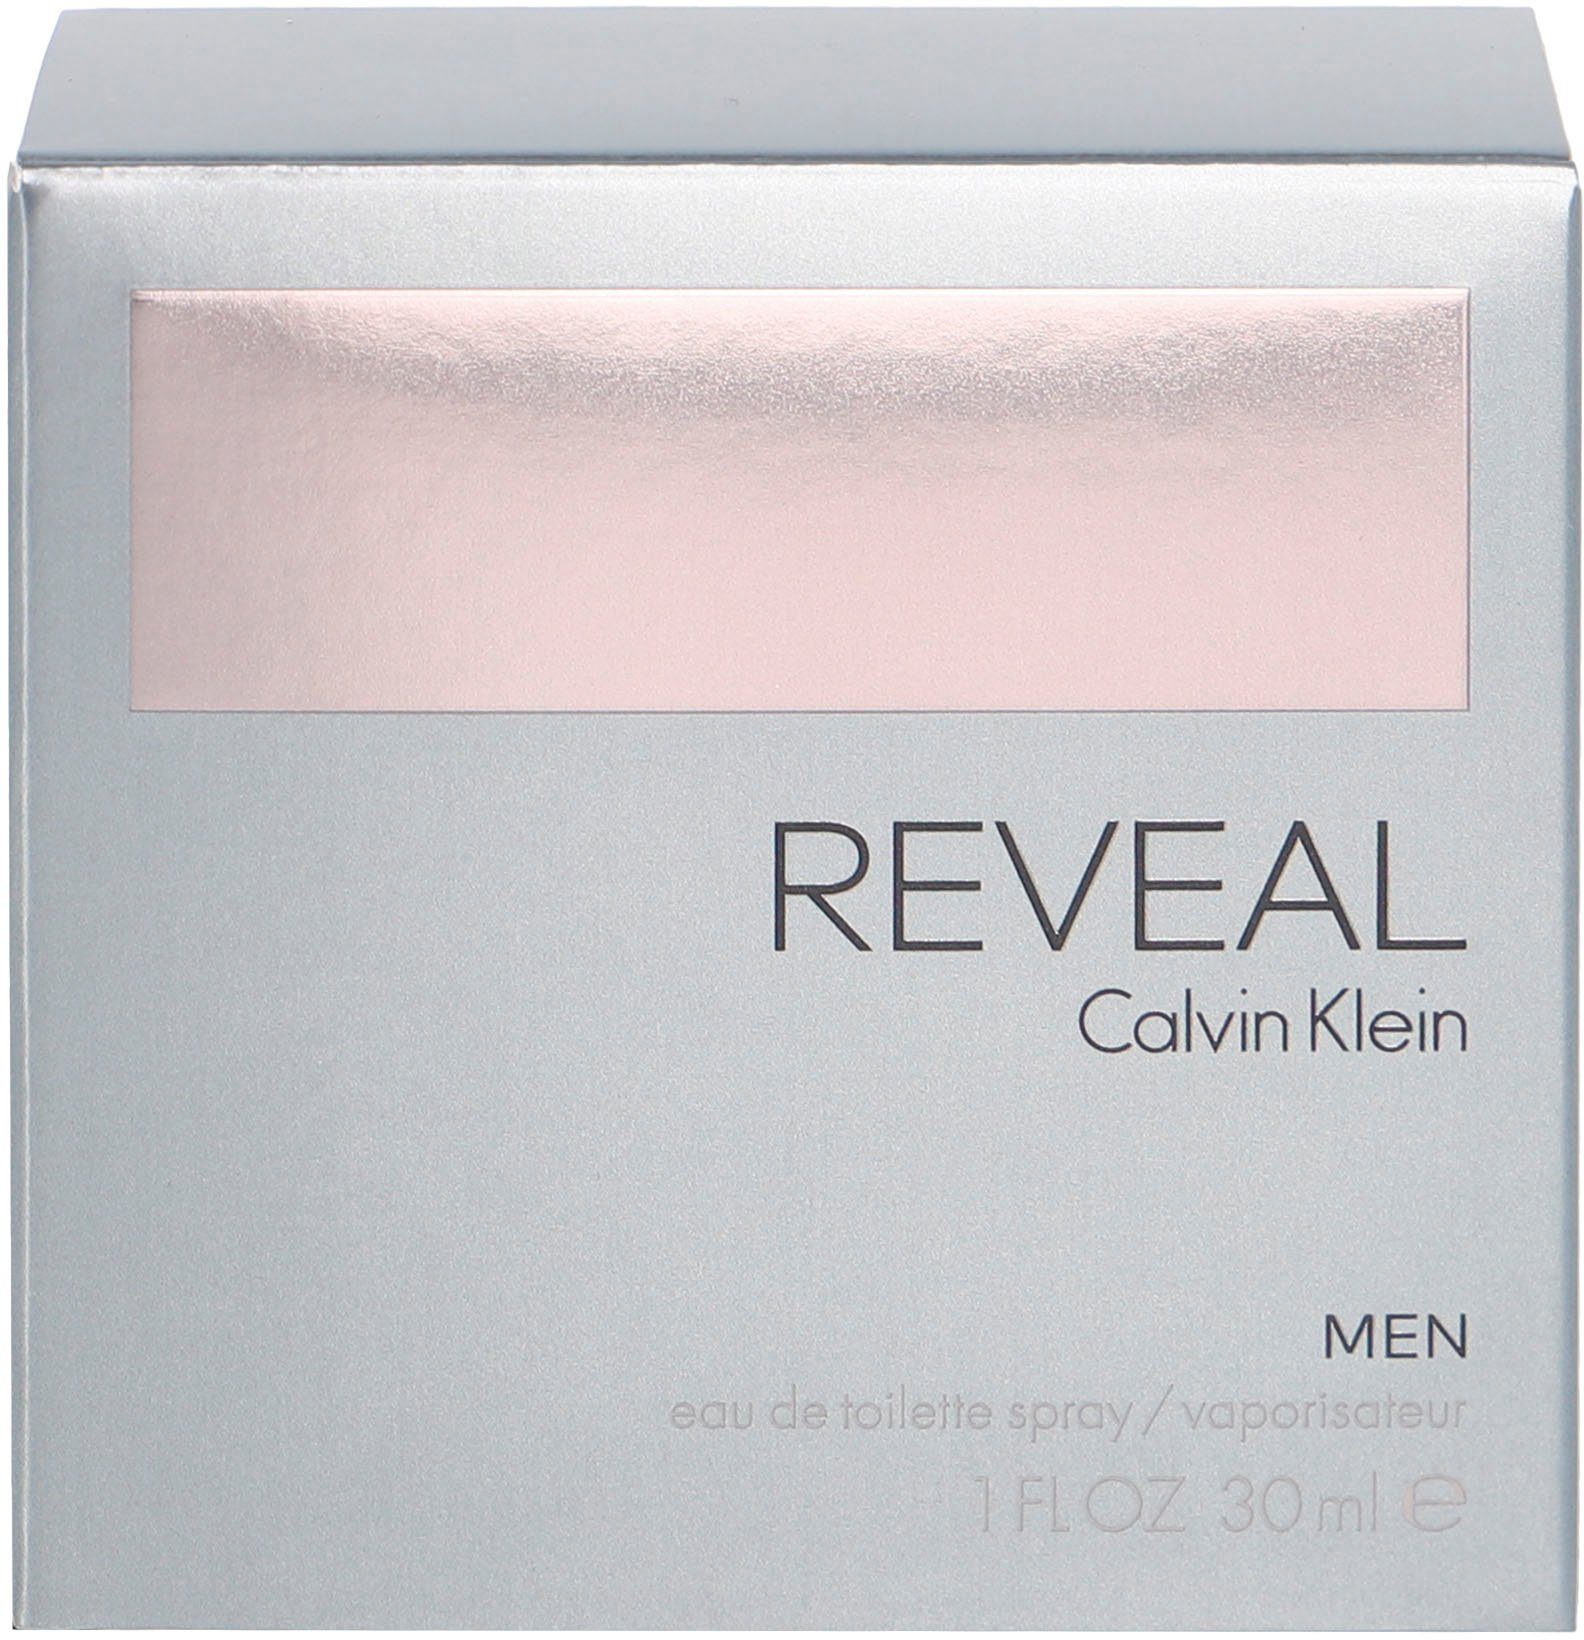 Men Reveal Calvin Klein Toilette de Eau